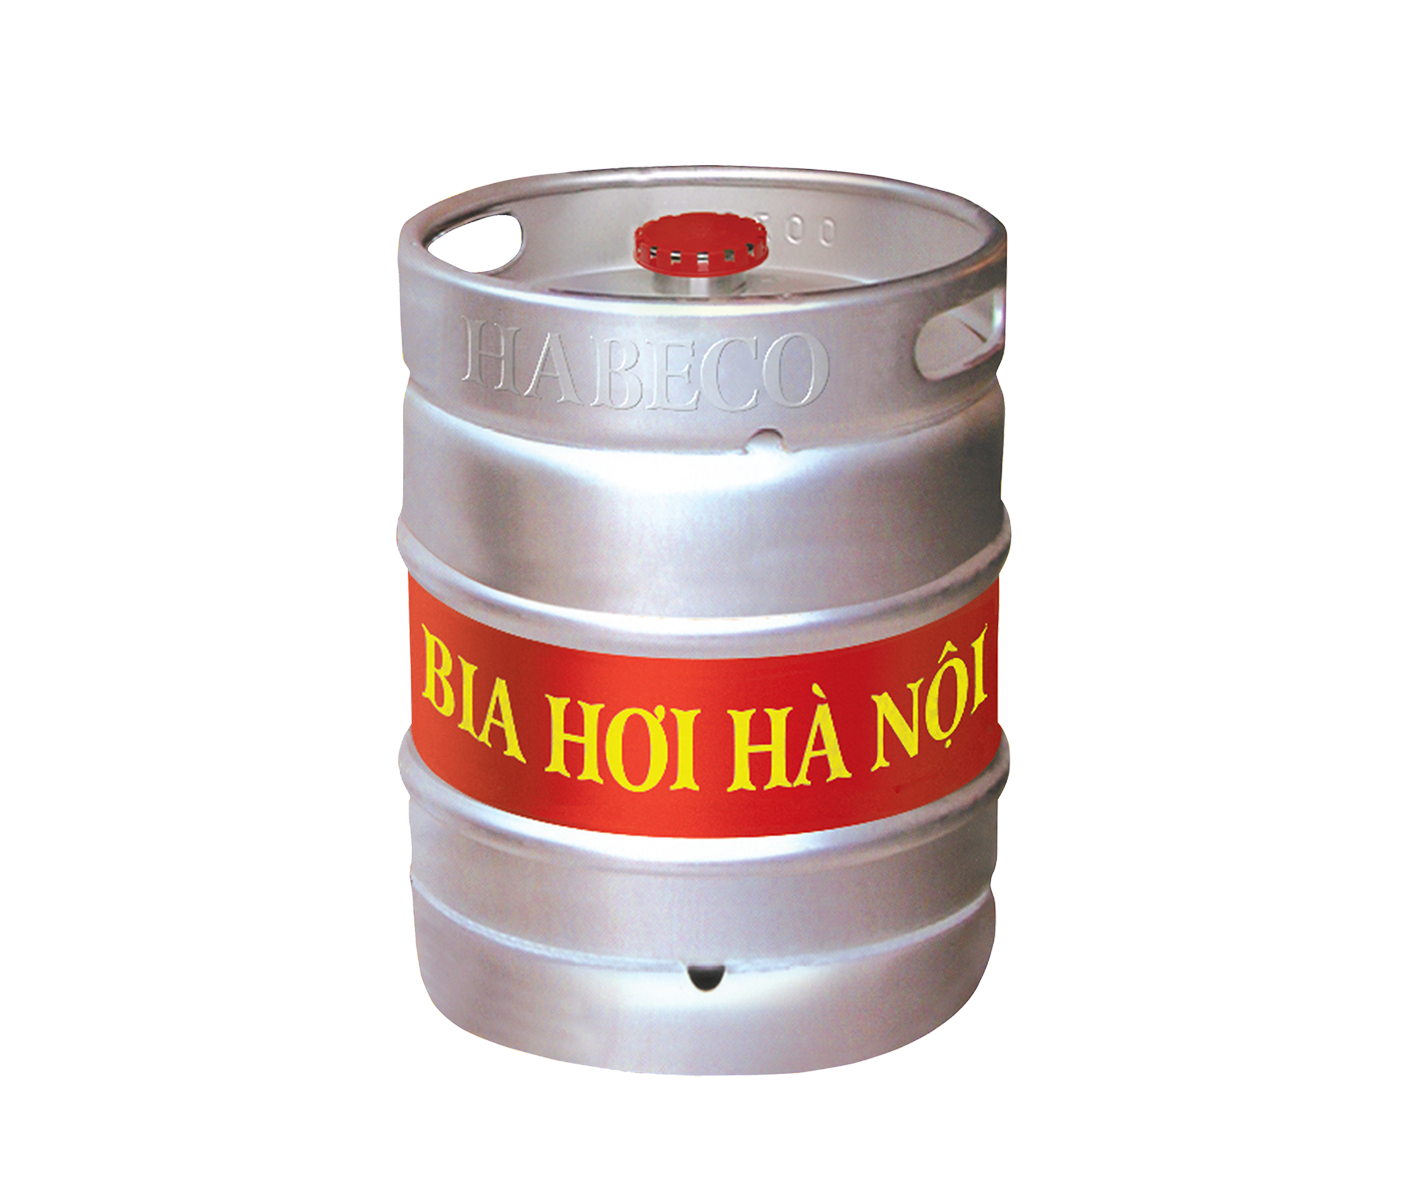 BIA HƠI HÀ NỘI KEG 50 LÍT - HABECO là sản phẩm tuyệt vời được phân phối nhiều nhất ở Việt Nam. Với chất lượng và hương vị đặc trưng riêng, đây là loại bia mà người dân thủ đô luôn tự hào. Thử và cảm nhận sức bật Việt Nam trong tinh bia bọt sẽ khiến bạn không thể quên nổi.